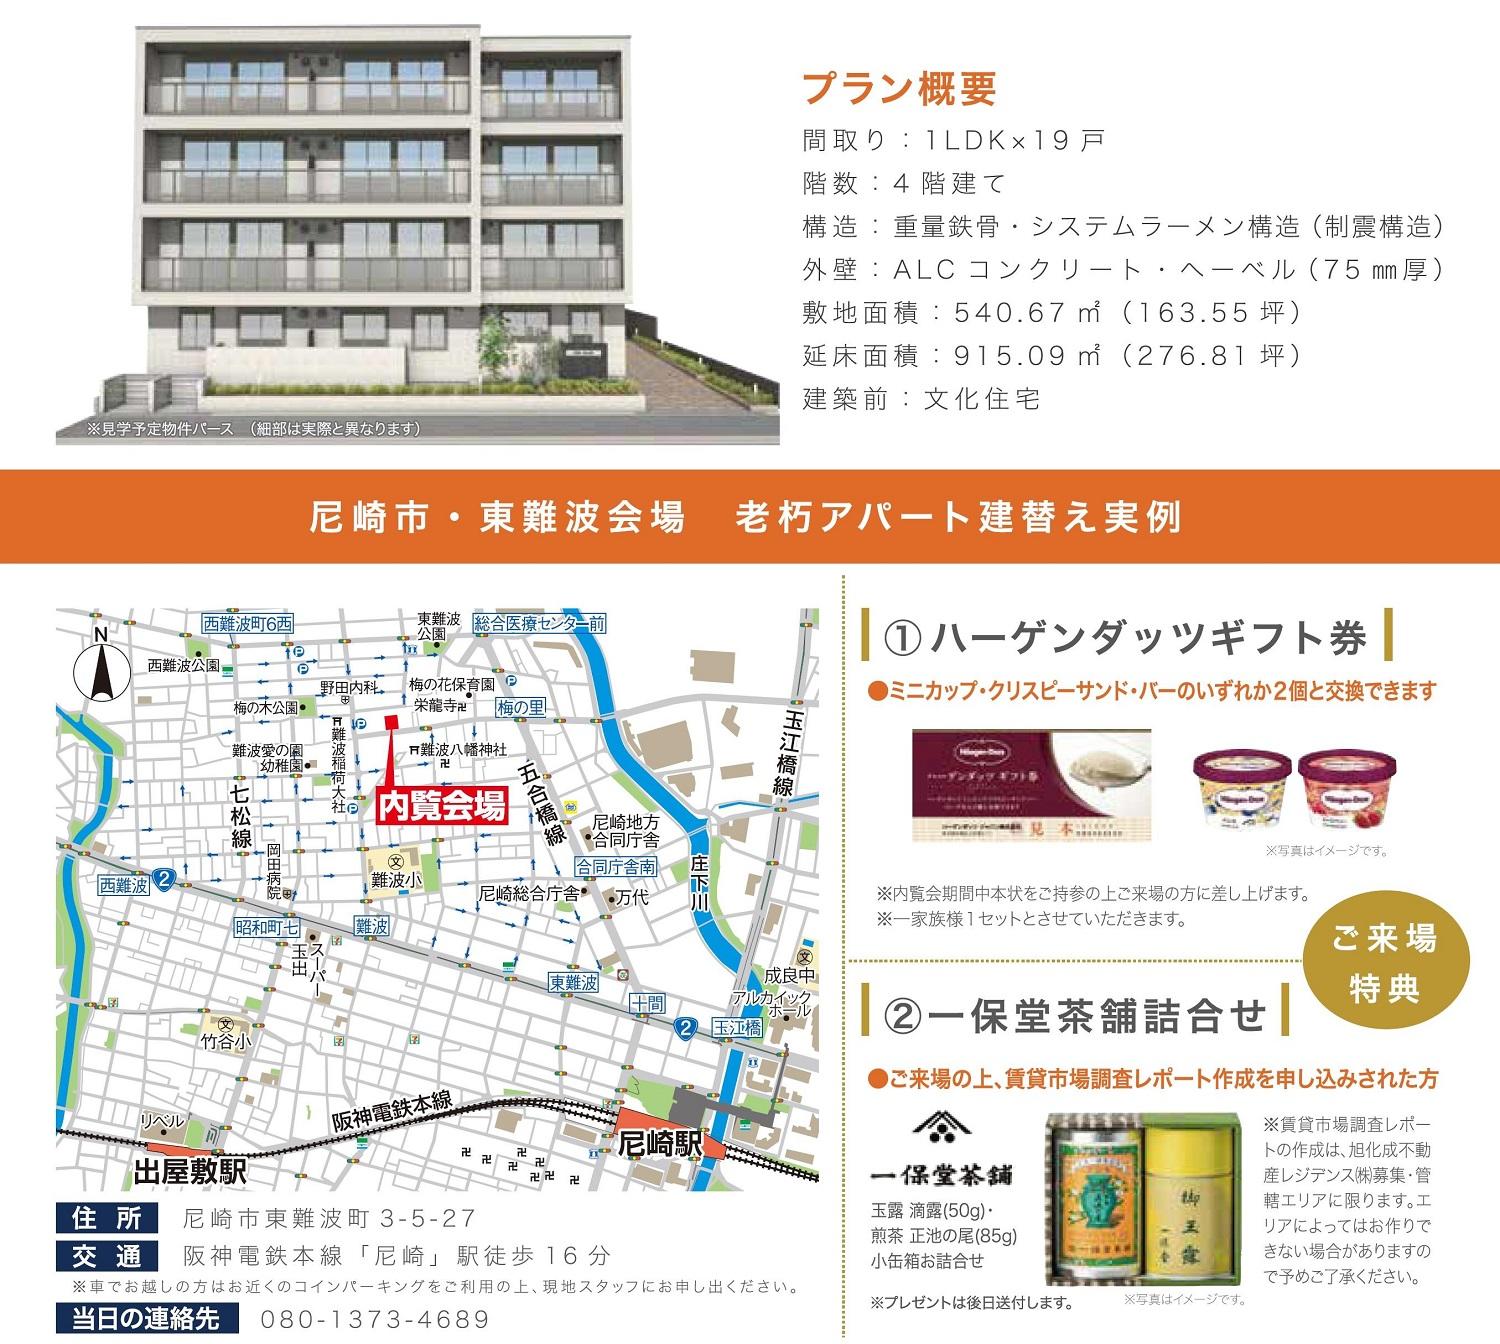 https://www.asahi-kasei.co.jp/maison/hebelplaza/blog/18/kobe/item/2019/20190909.jpg